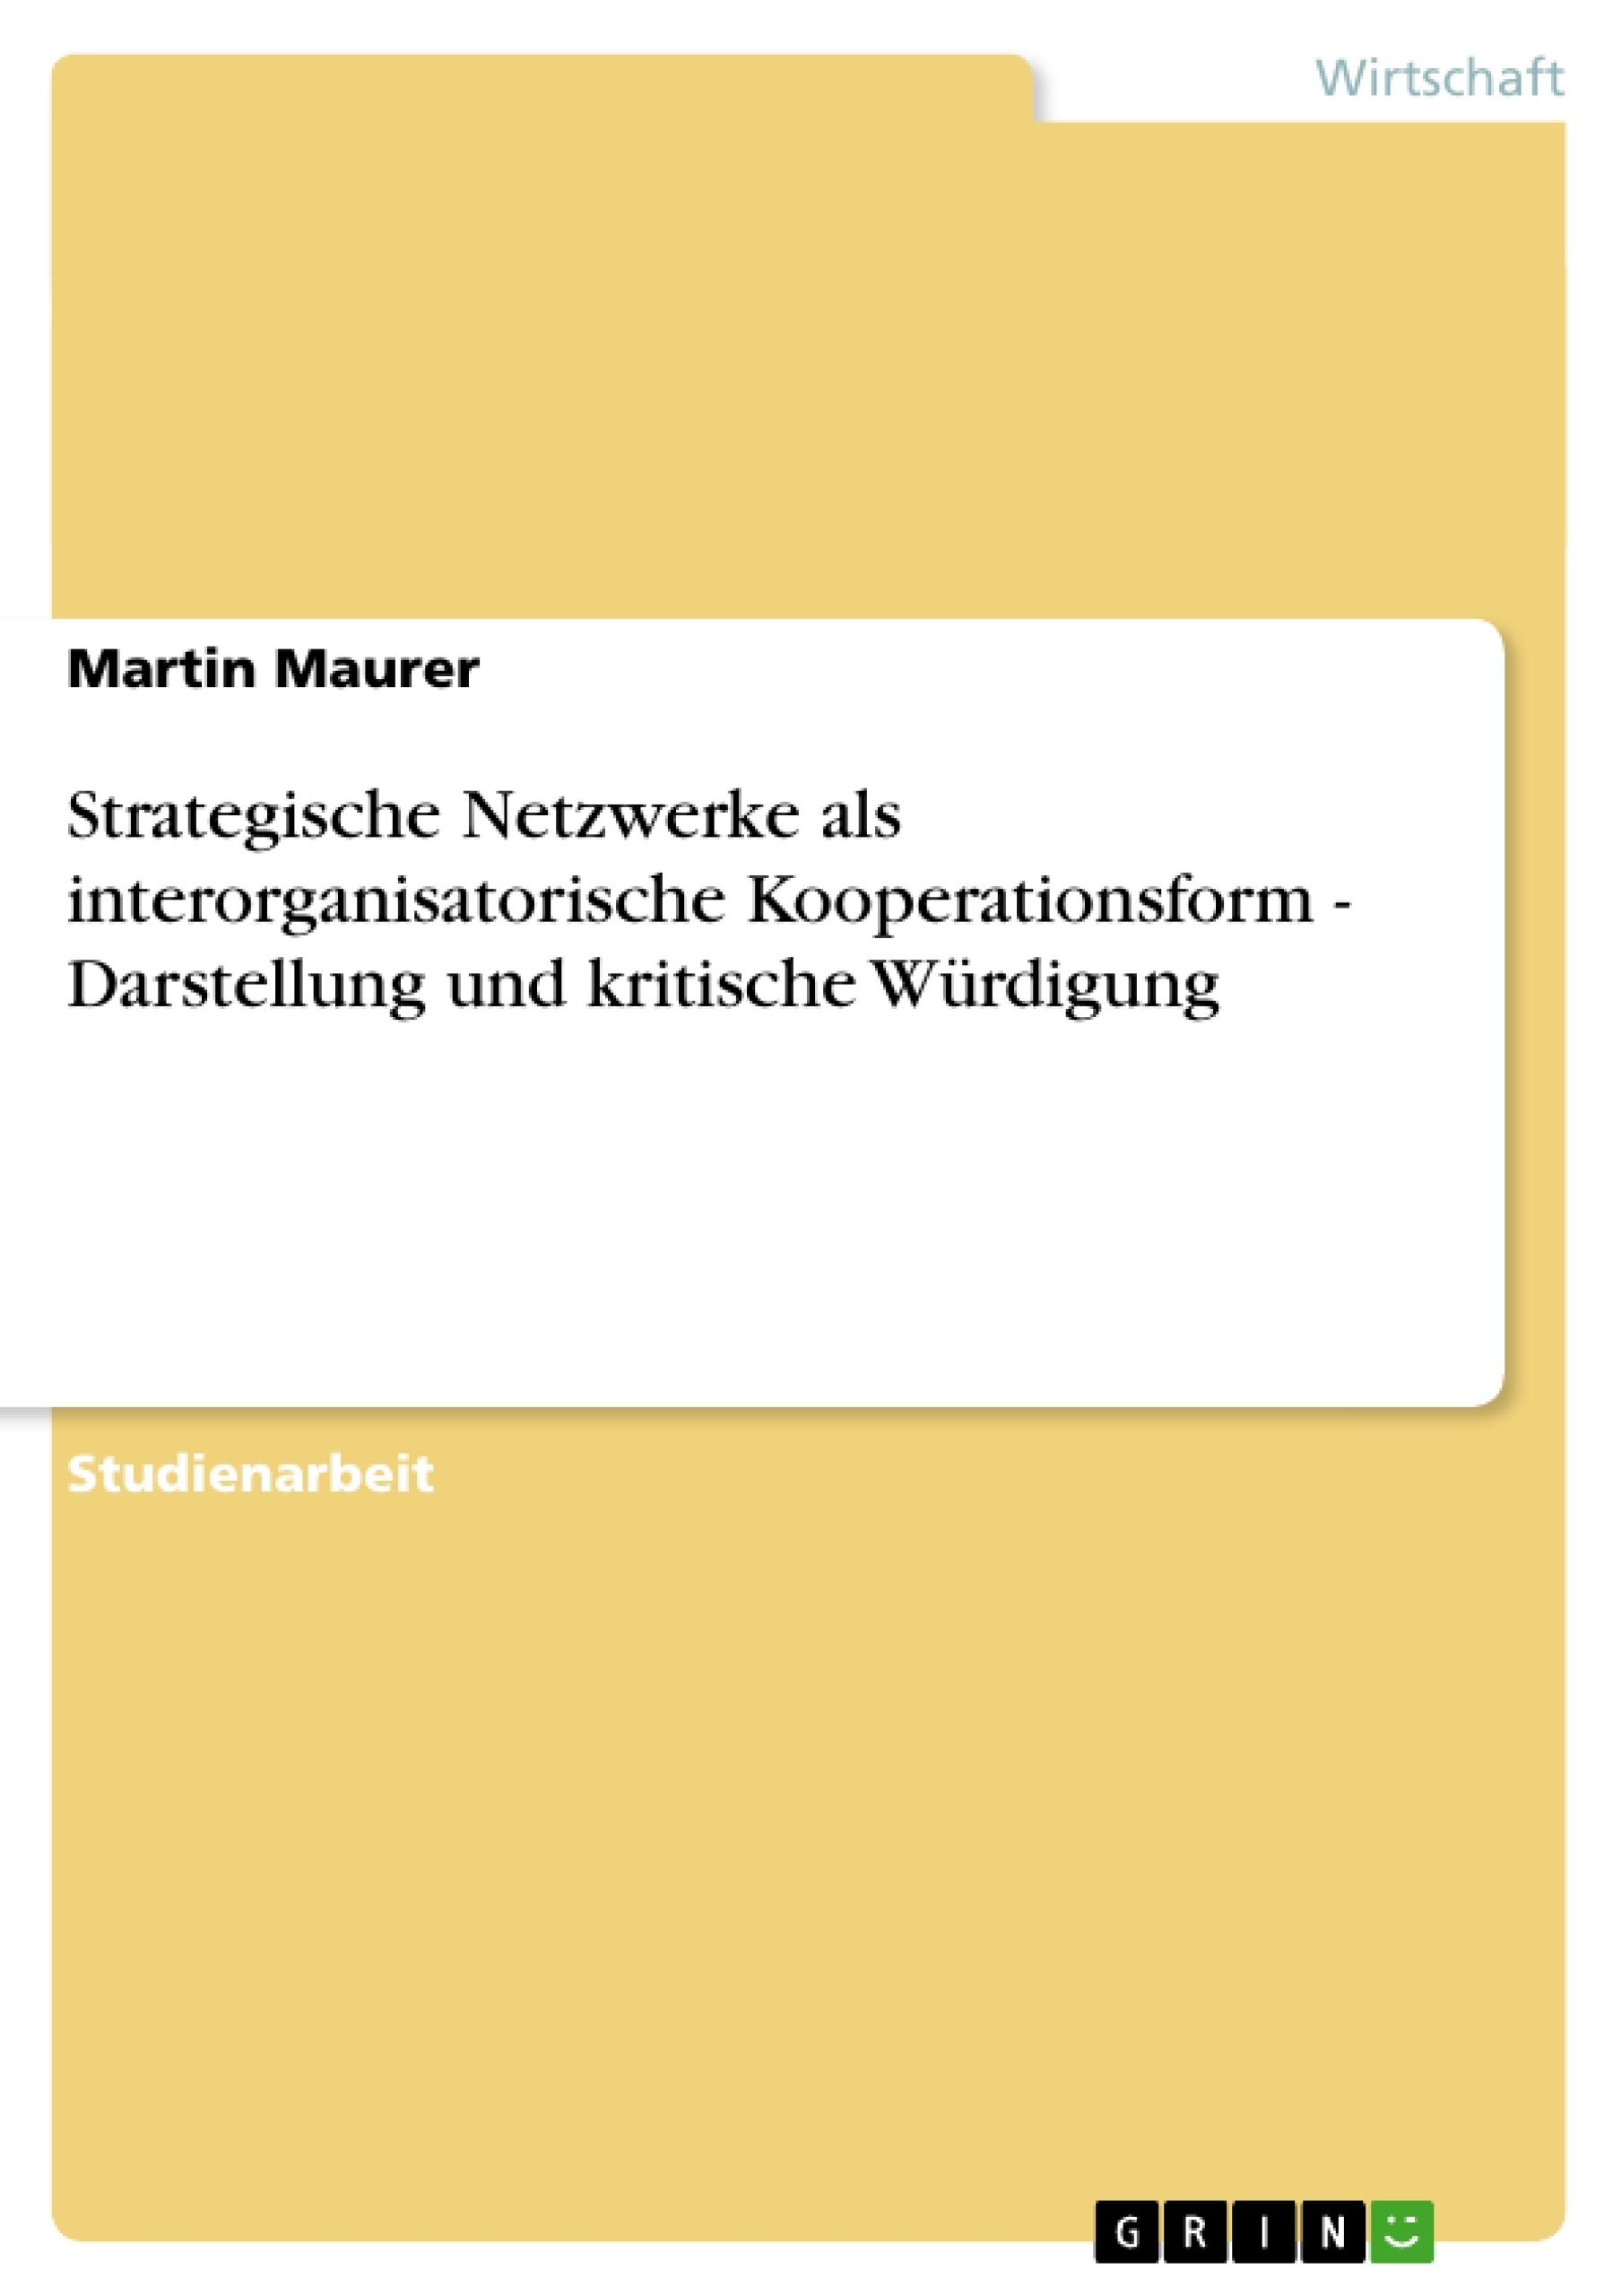 Título: Strategische Netzwerke als interorganisatorische Kooperationsform - Darstellung und kritische Würdigung